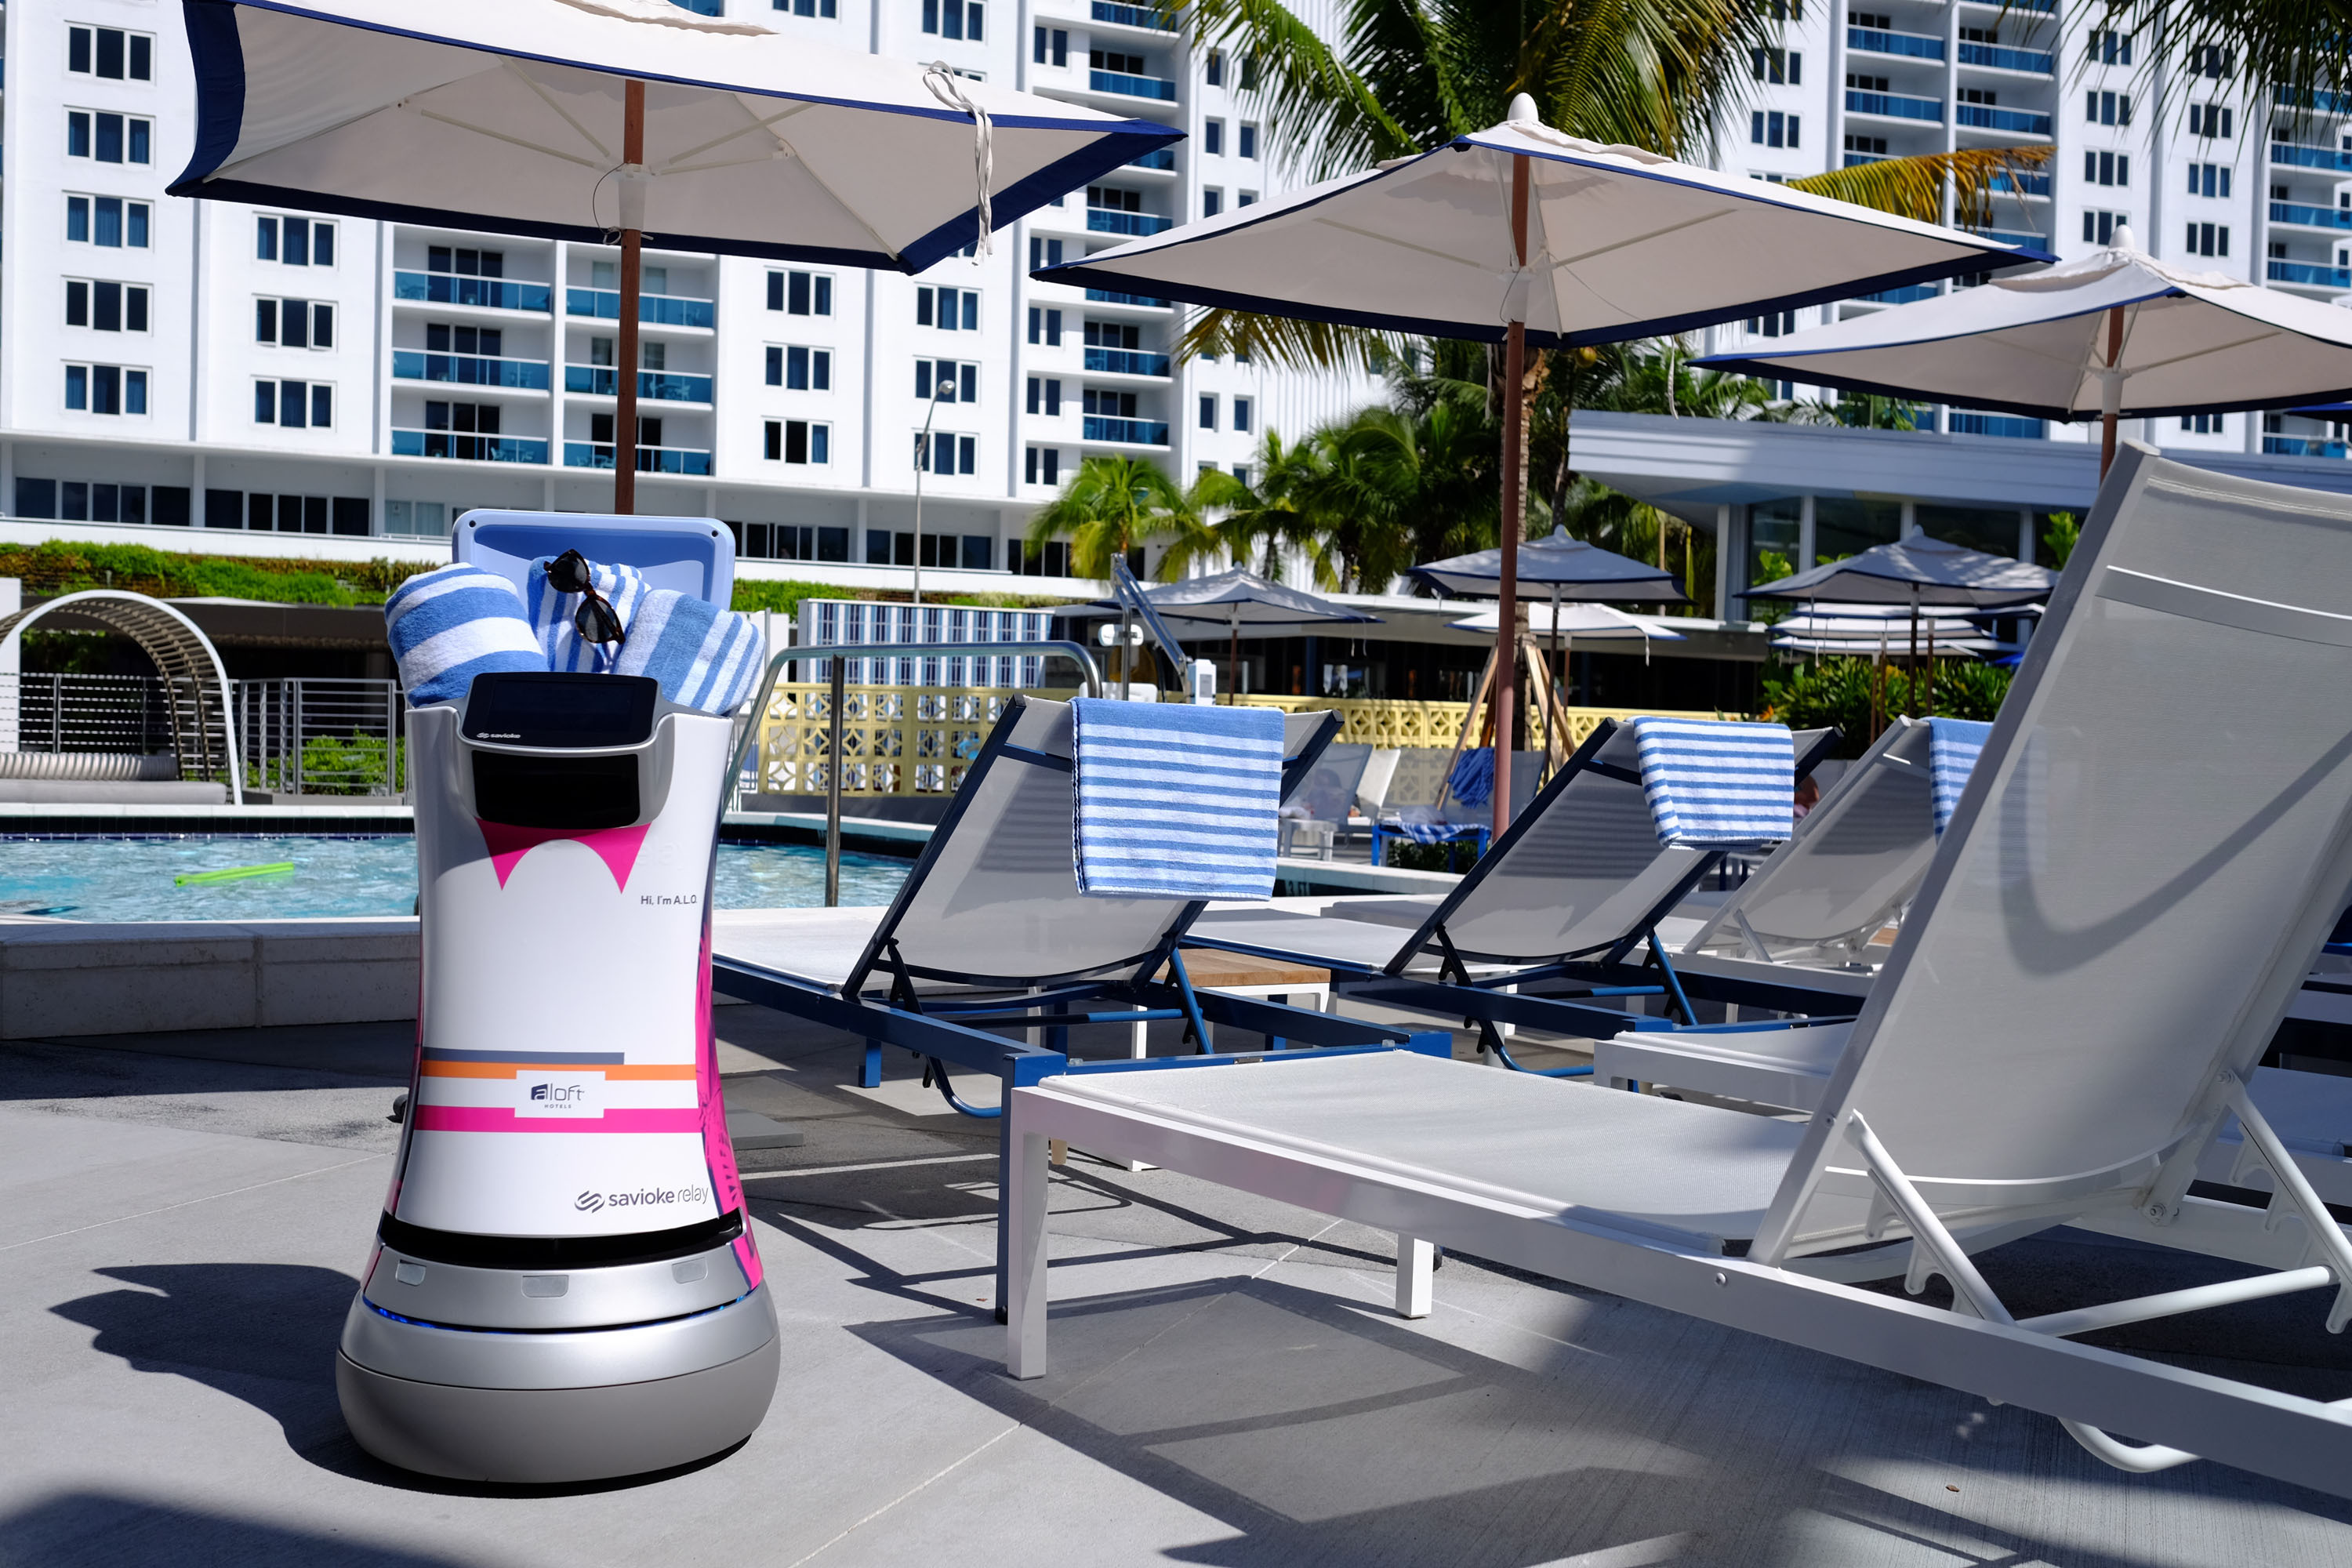 Jetzt kommen die Roboter ins Hotel: Aloft Hotels stellen Androiden-Butler “Botlr” fest ein